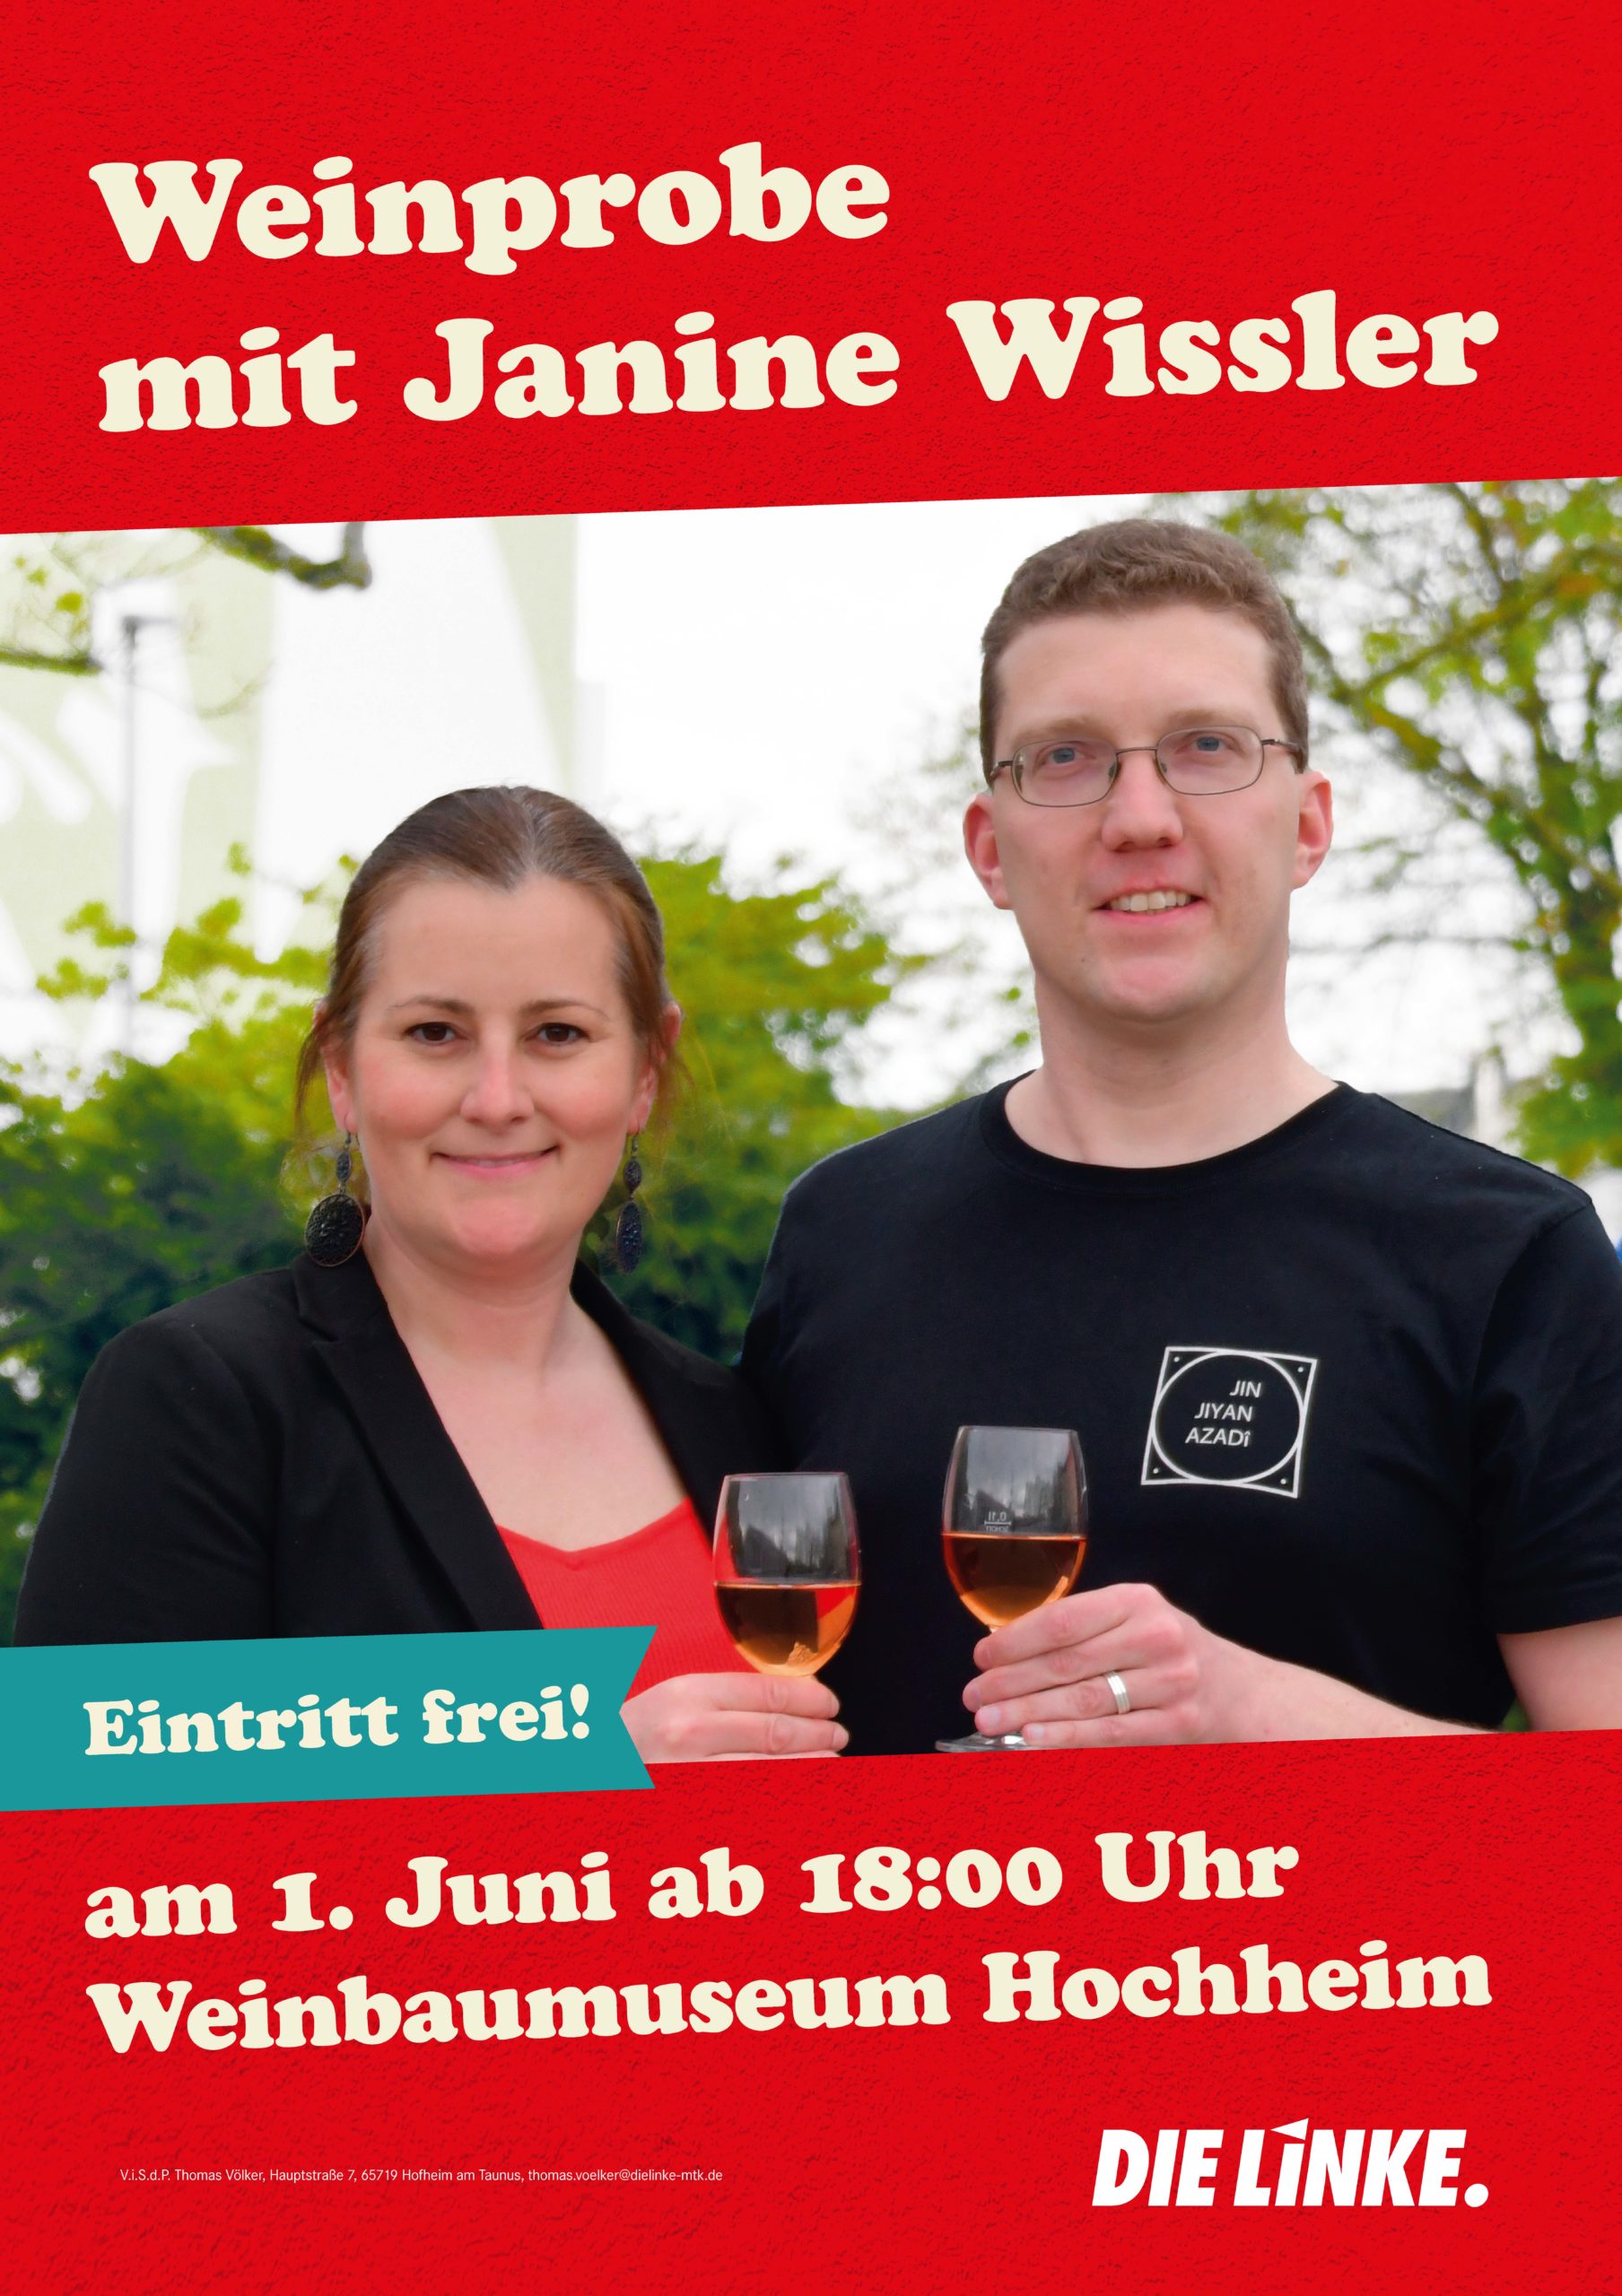 Veranstaltungsplakat zur Weinprobe mit Janine Wissler und Thomas Völker, die mit Weingläsern anstoßen